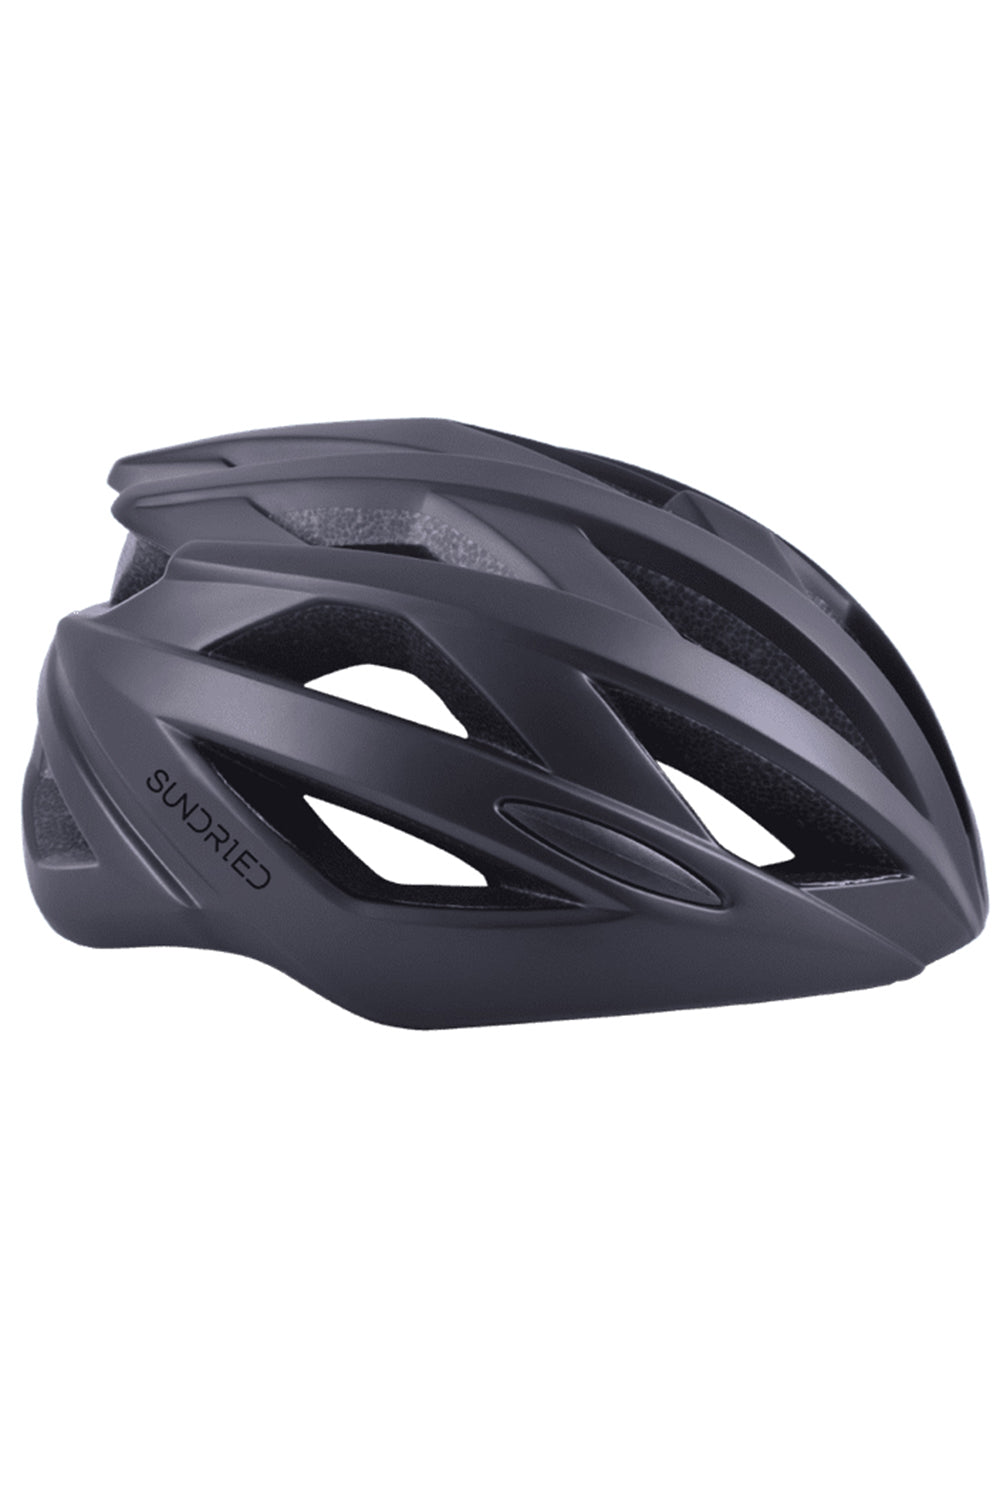 Sundried Roteck Road Cycle Helmet Helmet S Black SD0386 S Black Activewear